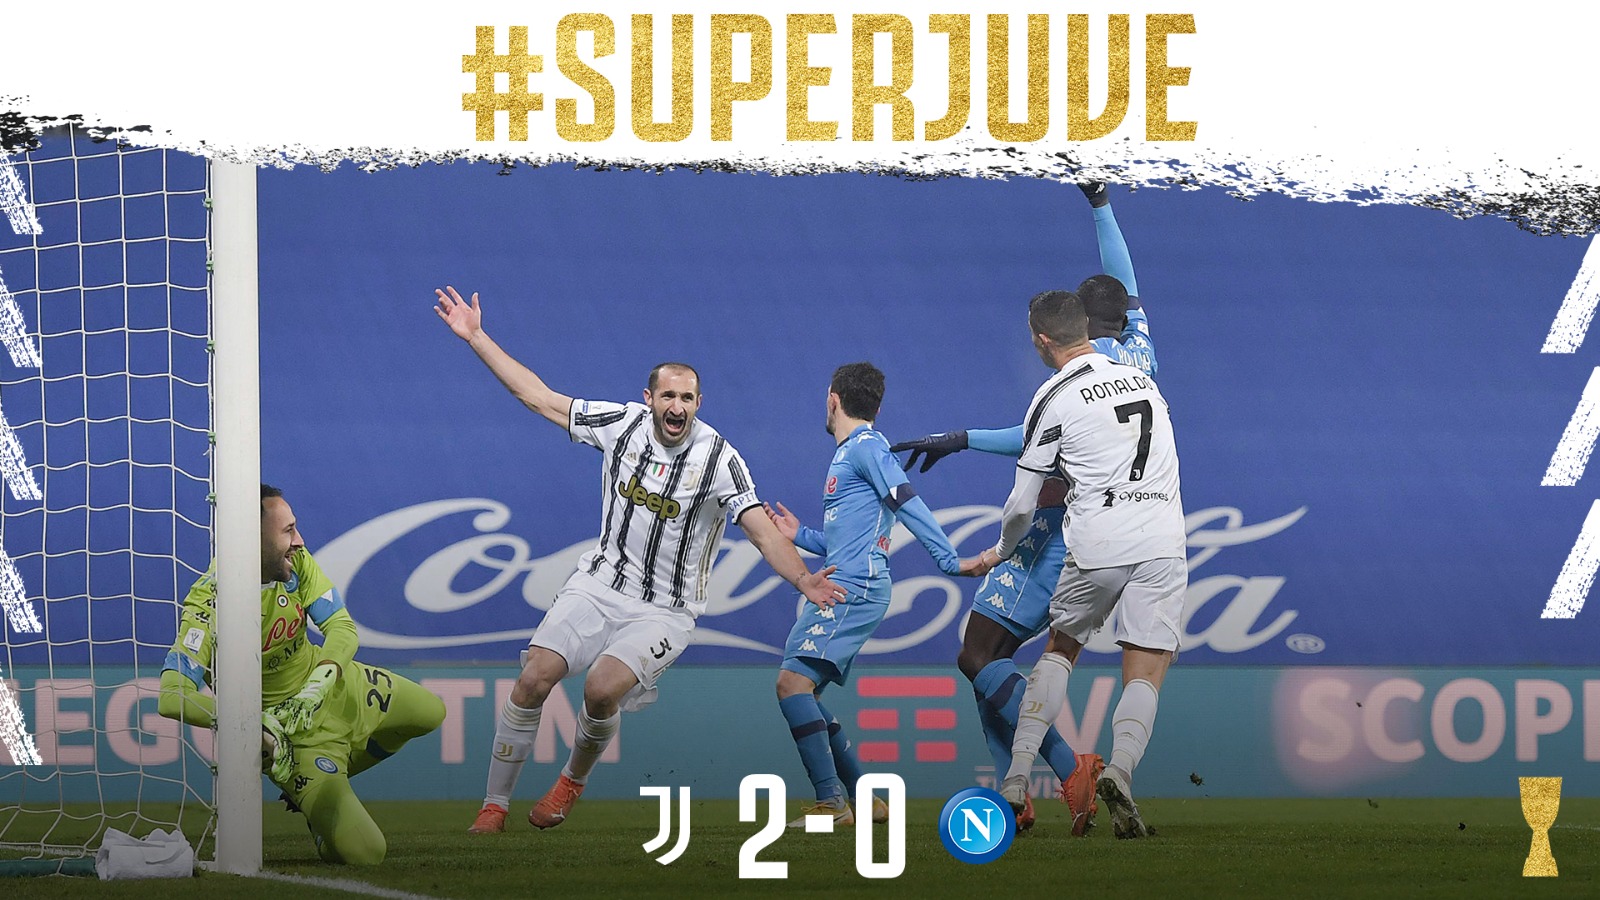 Juventus Kalahkan Napoli di Piala Super Italia, Andrea Pirlo Menikmati Trofi Pertama sebagai Pelatih